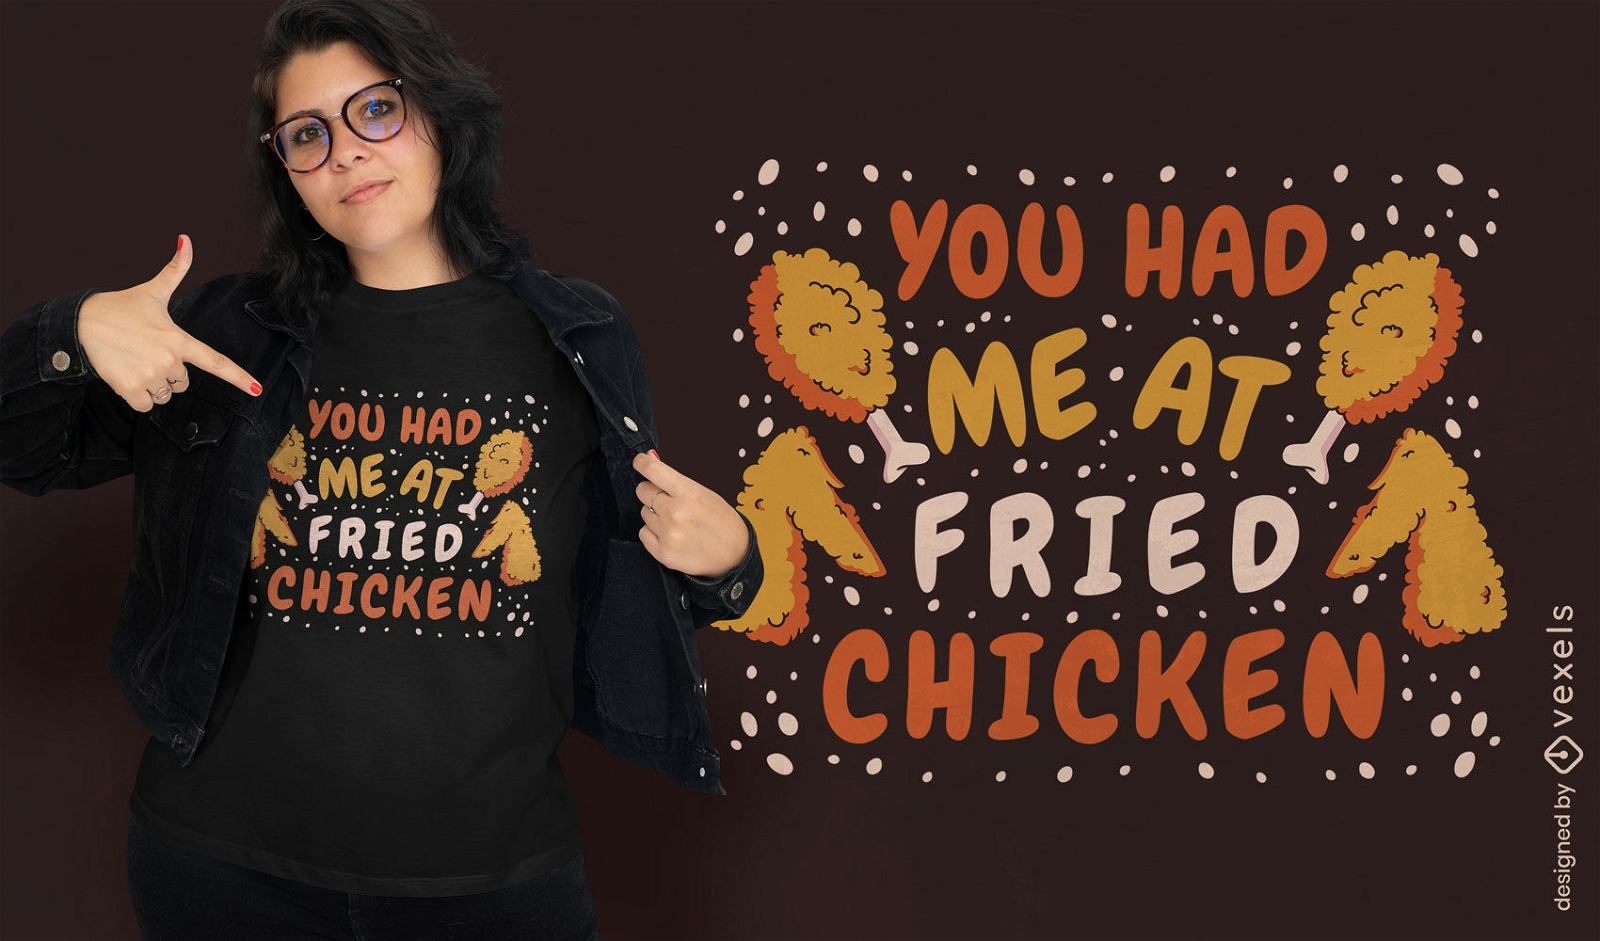 Fried chicken quote t-shirt design